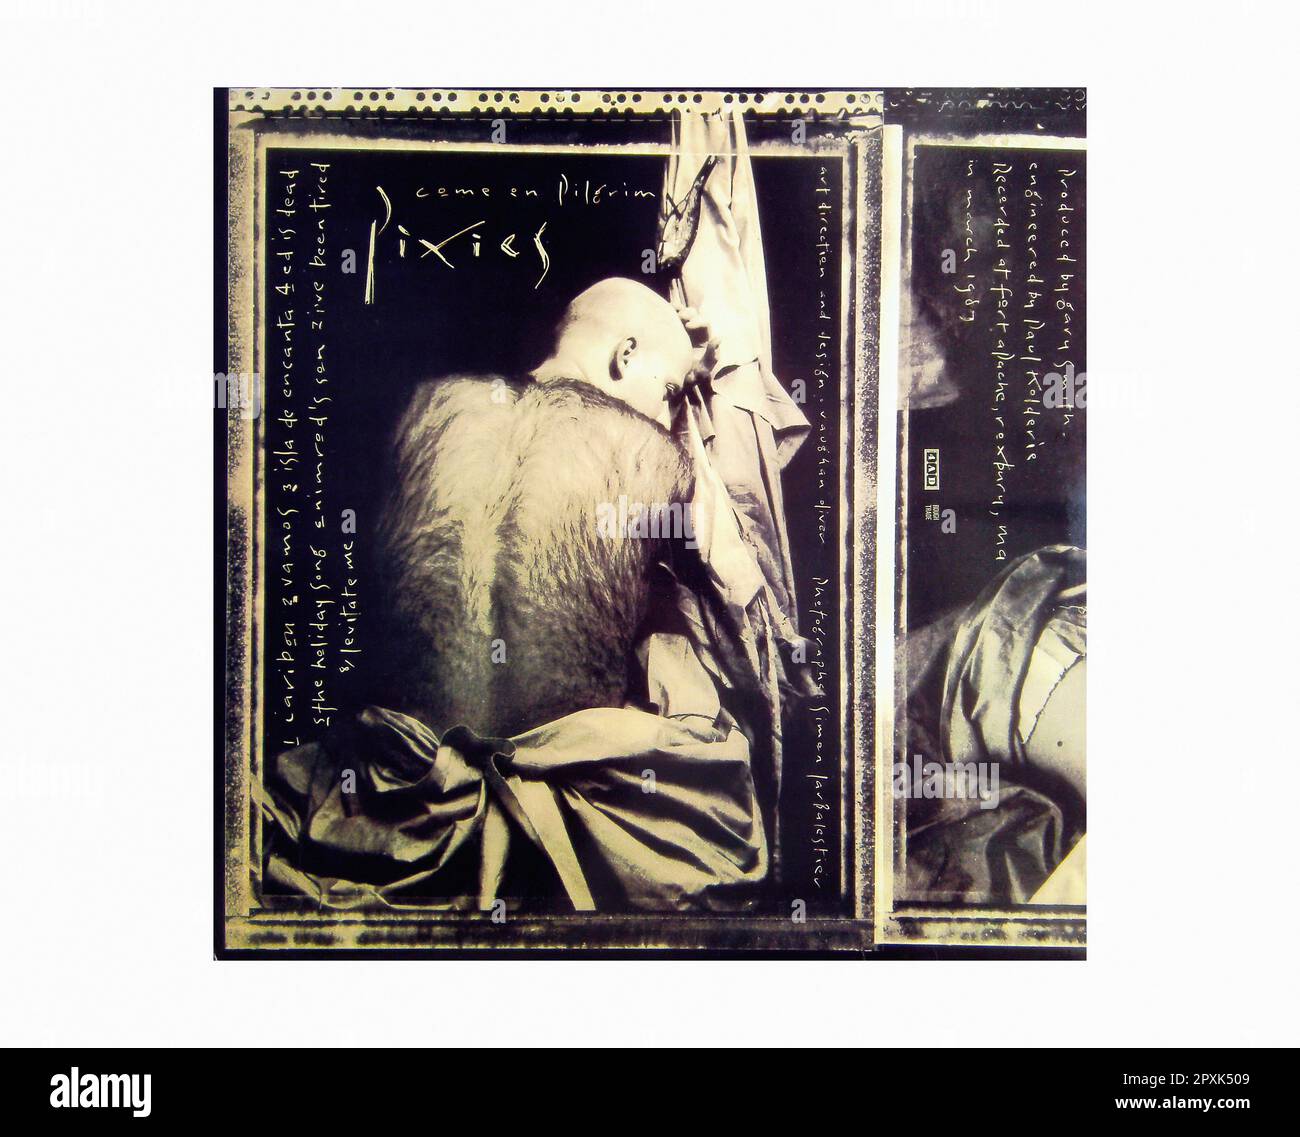 Pixies - Come on Pilgrim [1987] - Vintage Vinyl Record Sleeve Banque D'Images